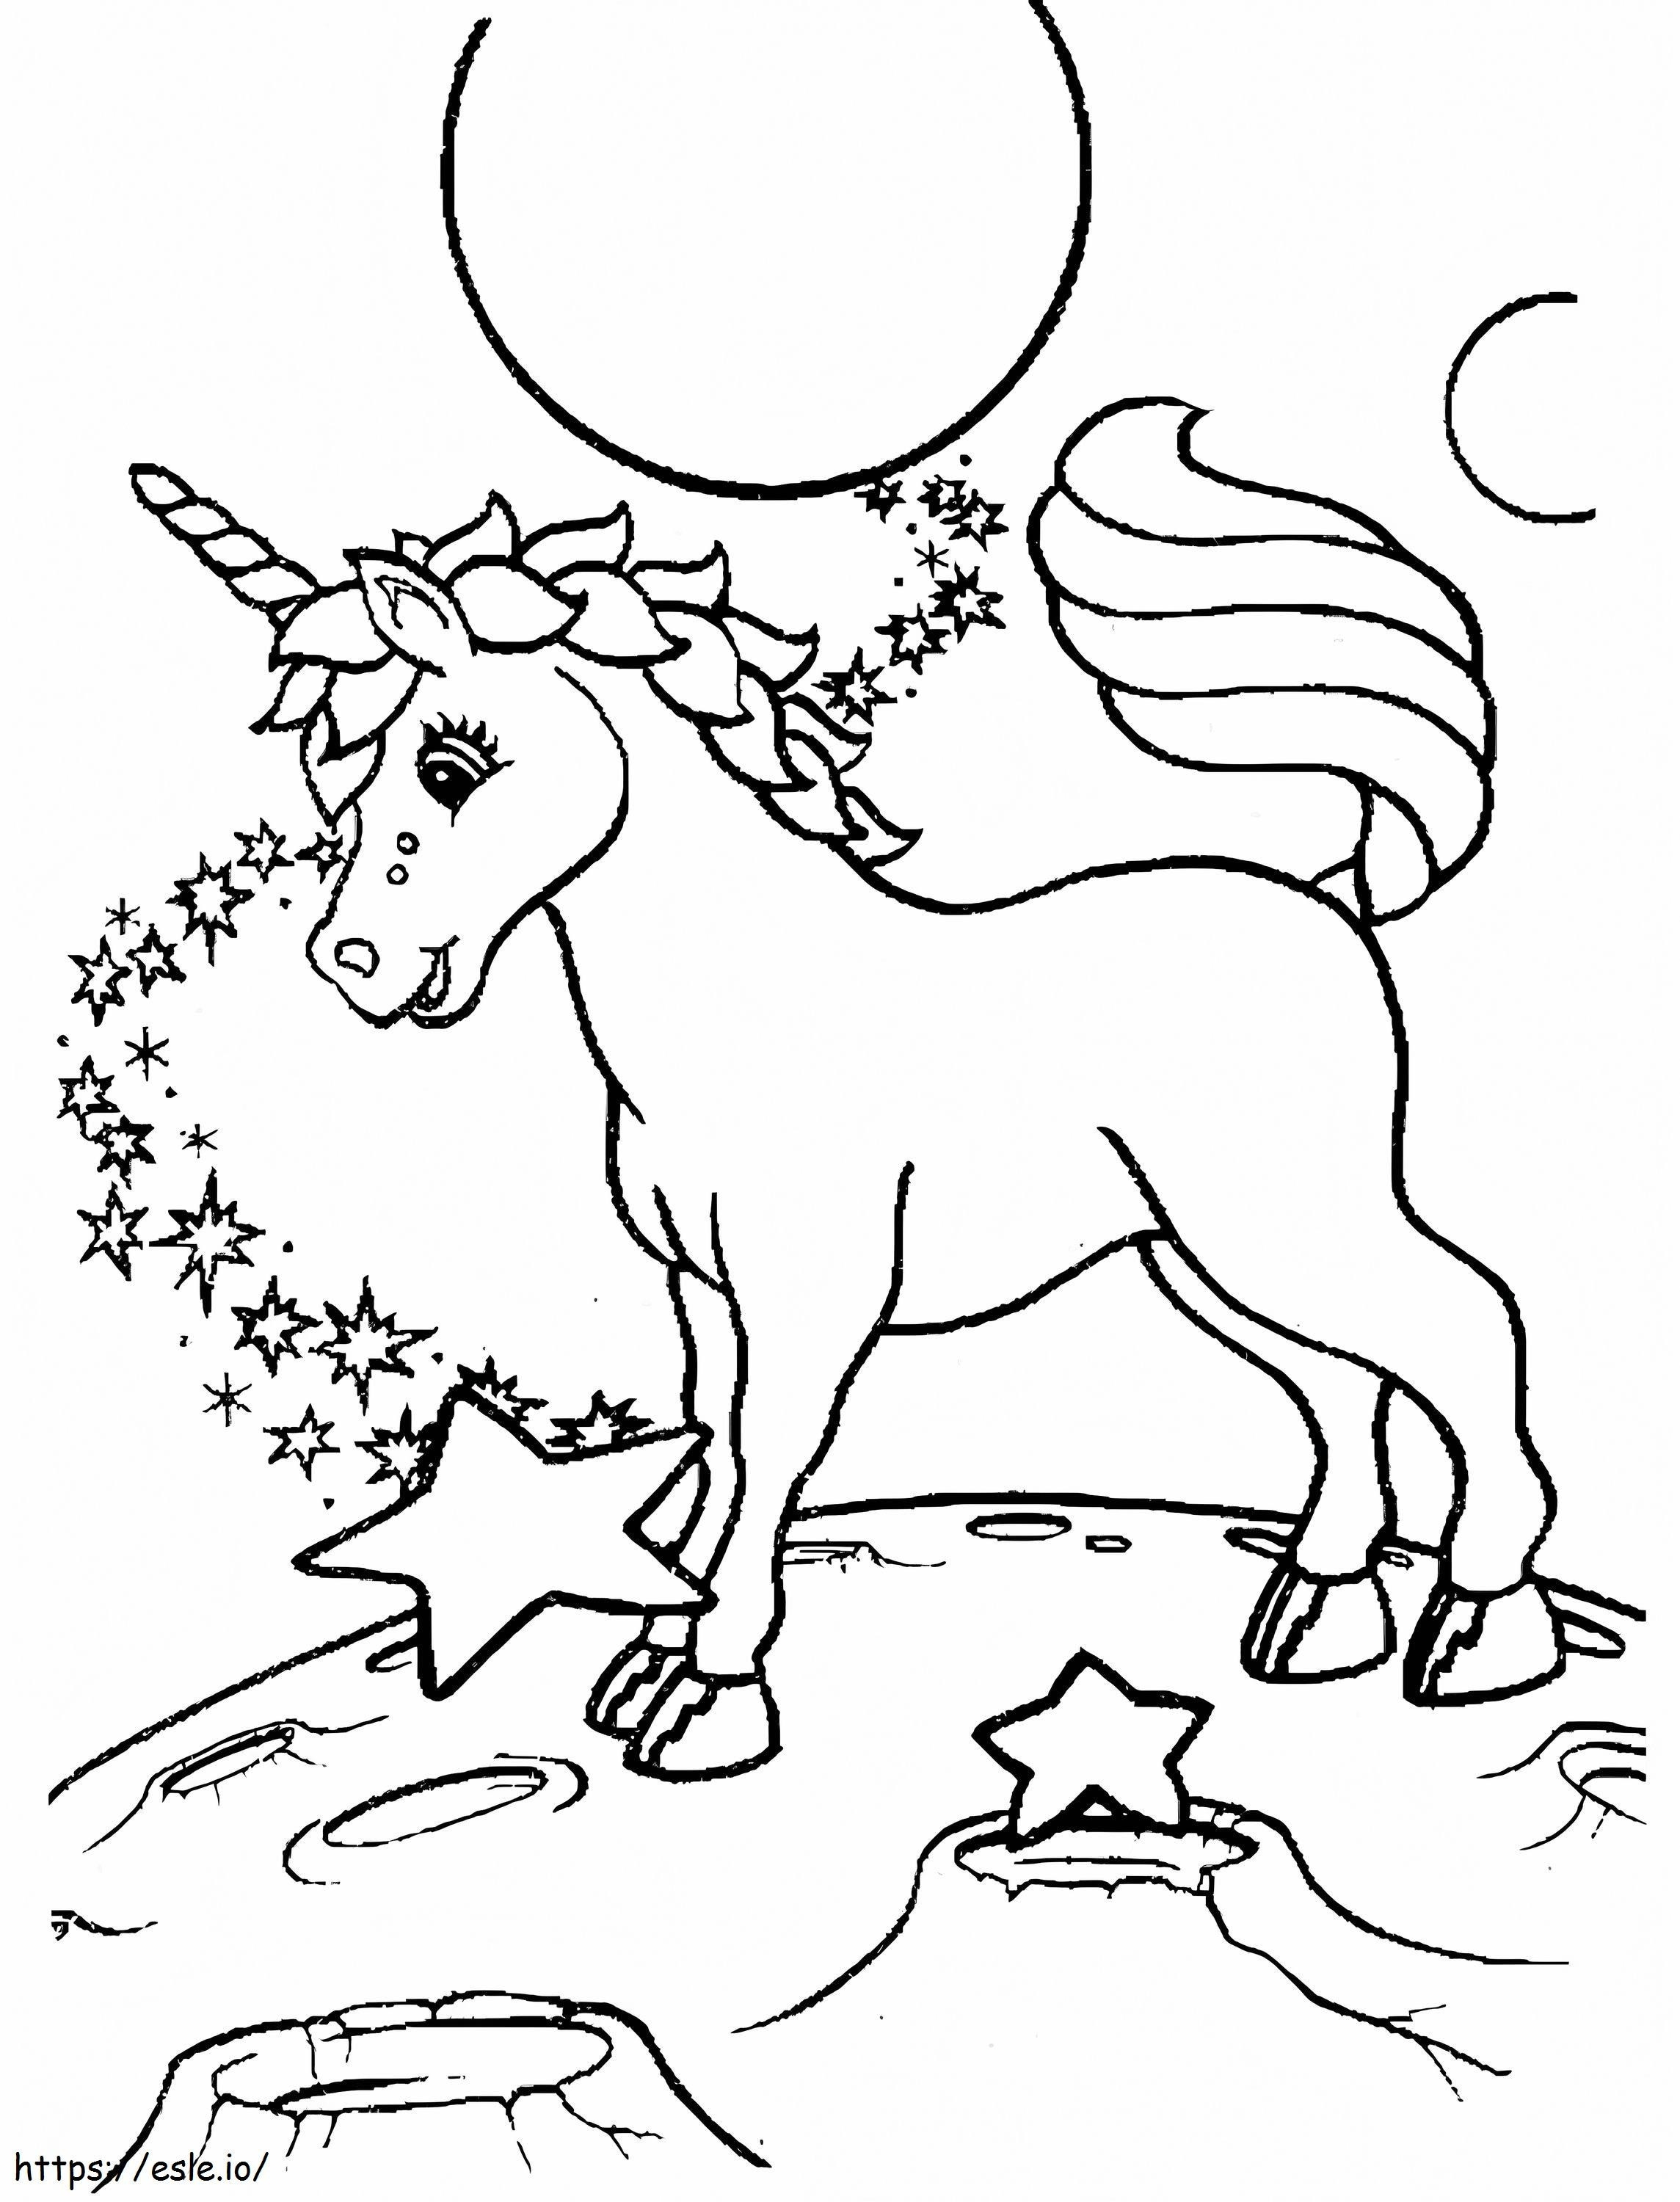  Unicorn În Lisa Frank A4 de colorat